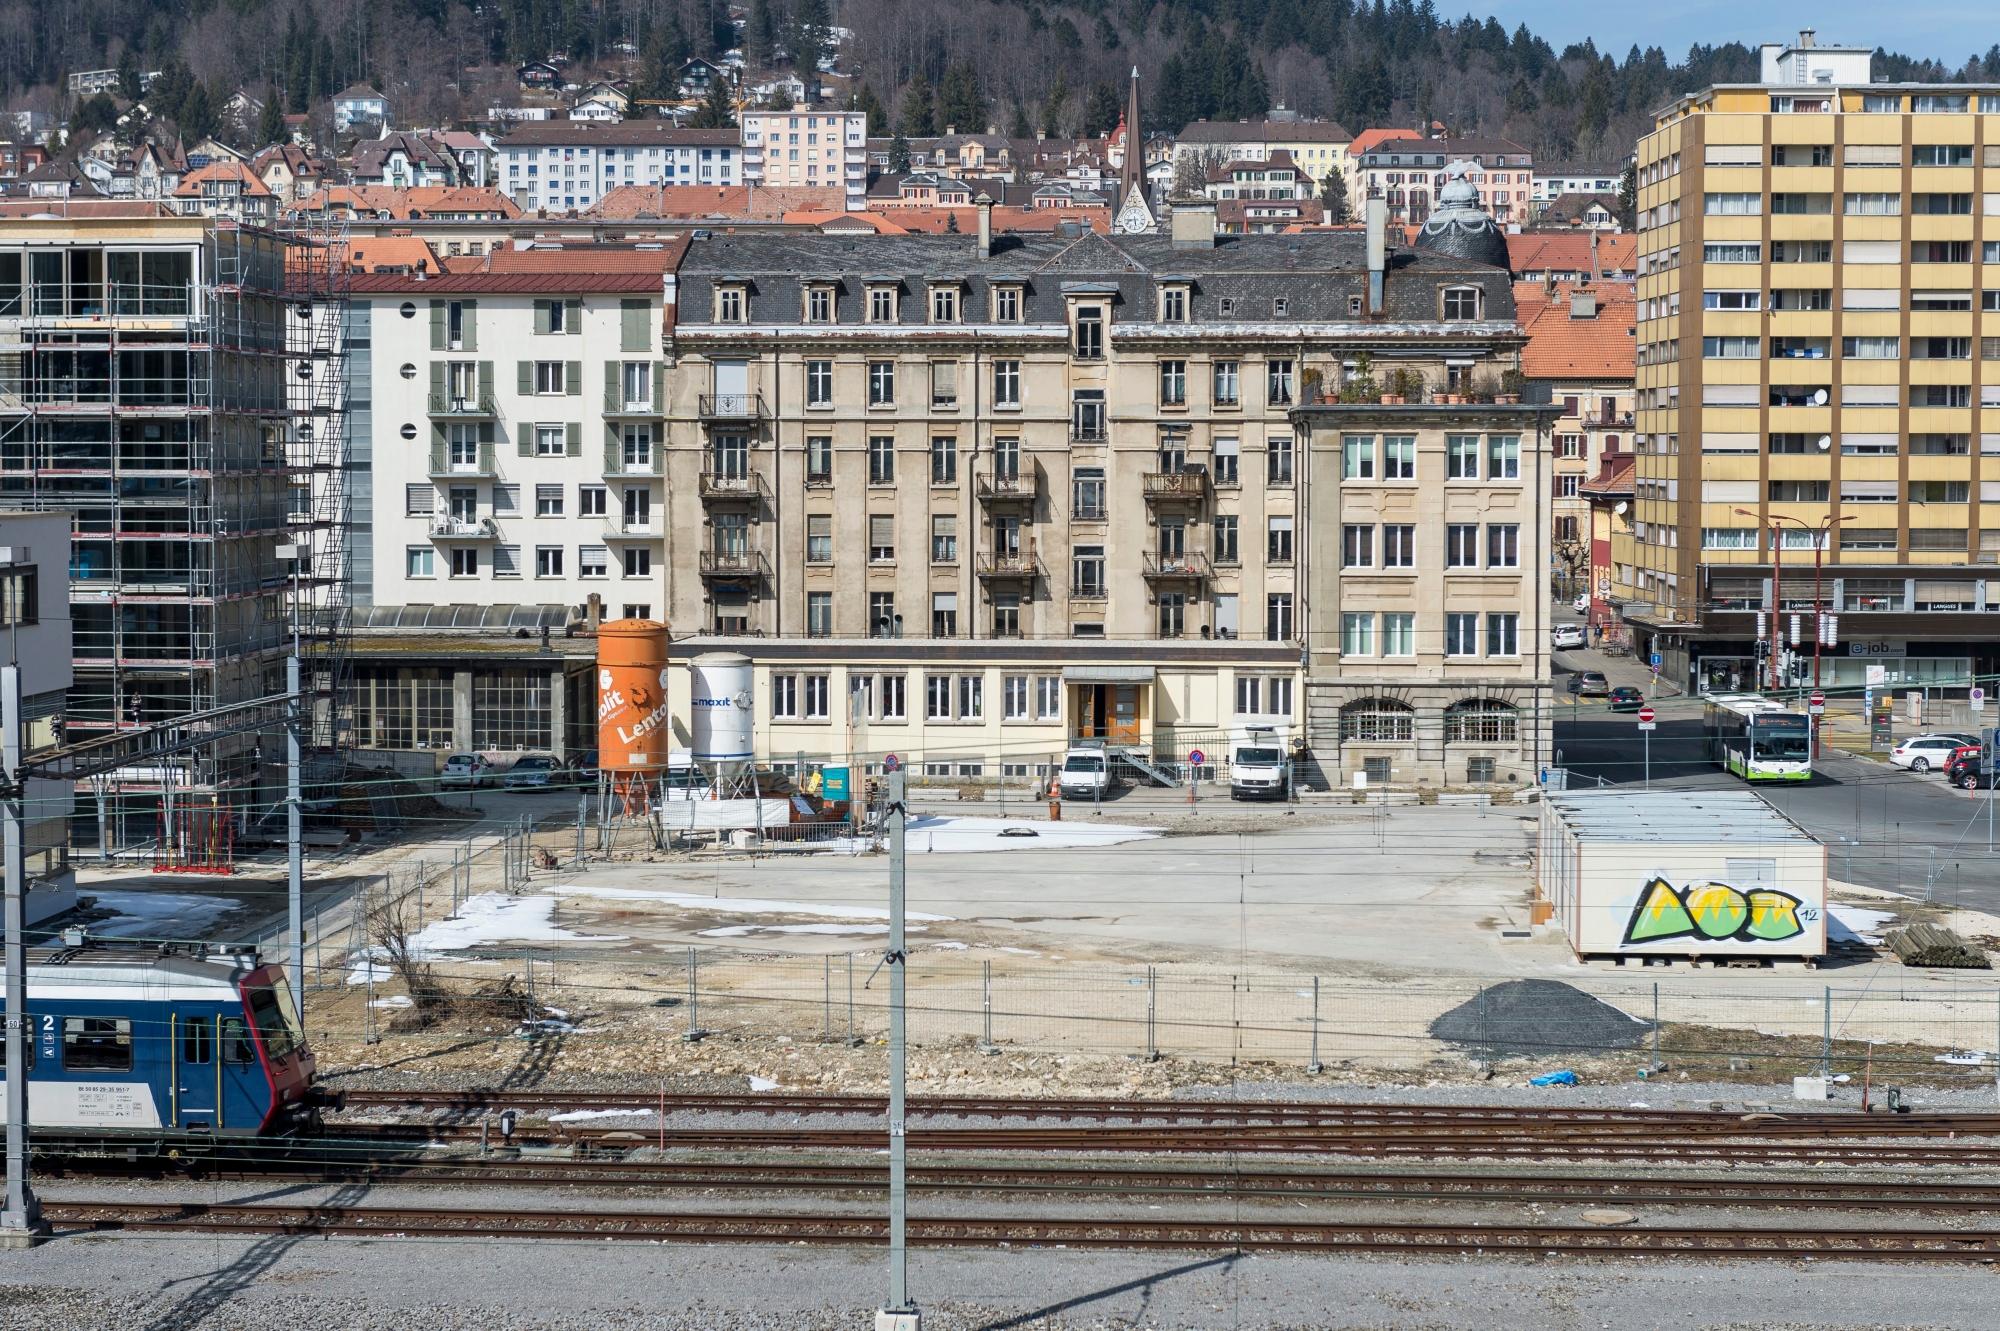 Emplacement du nouvel Hotel Judiciaire a cote de la gare a La Chaux-de-Fonds

La Chaux-de-Fonds, le 22 mars 2016
Photo: Lucas Vuitel HOTEL JUDICIAIRE